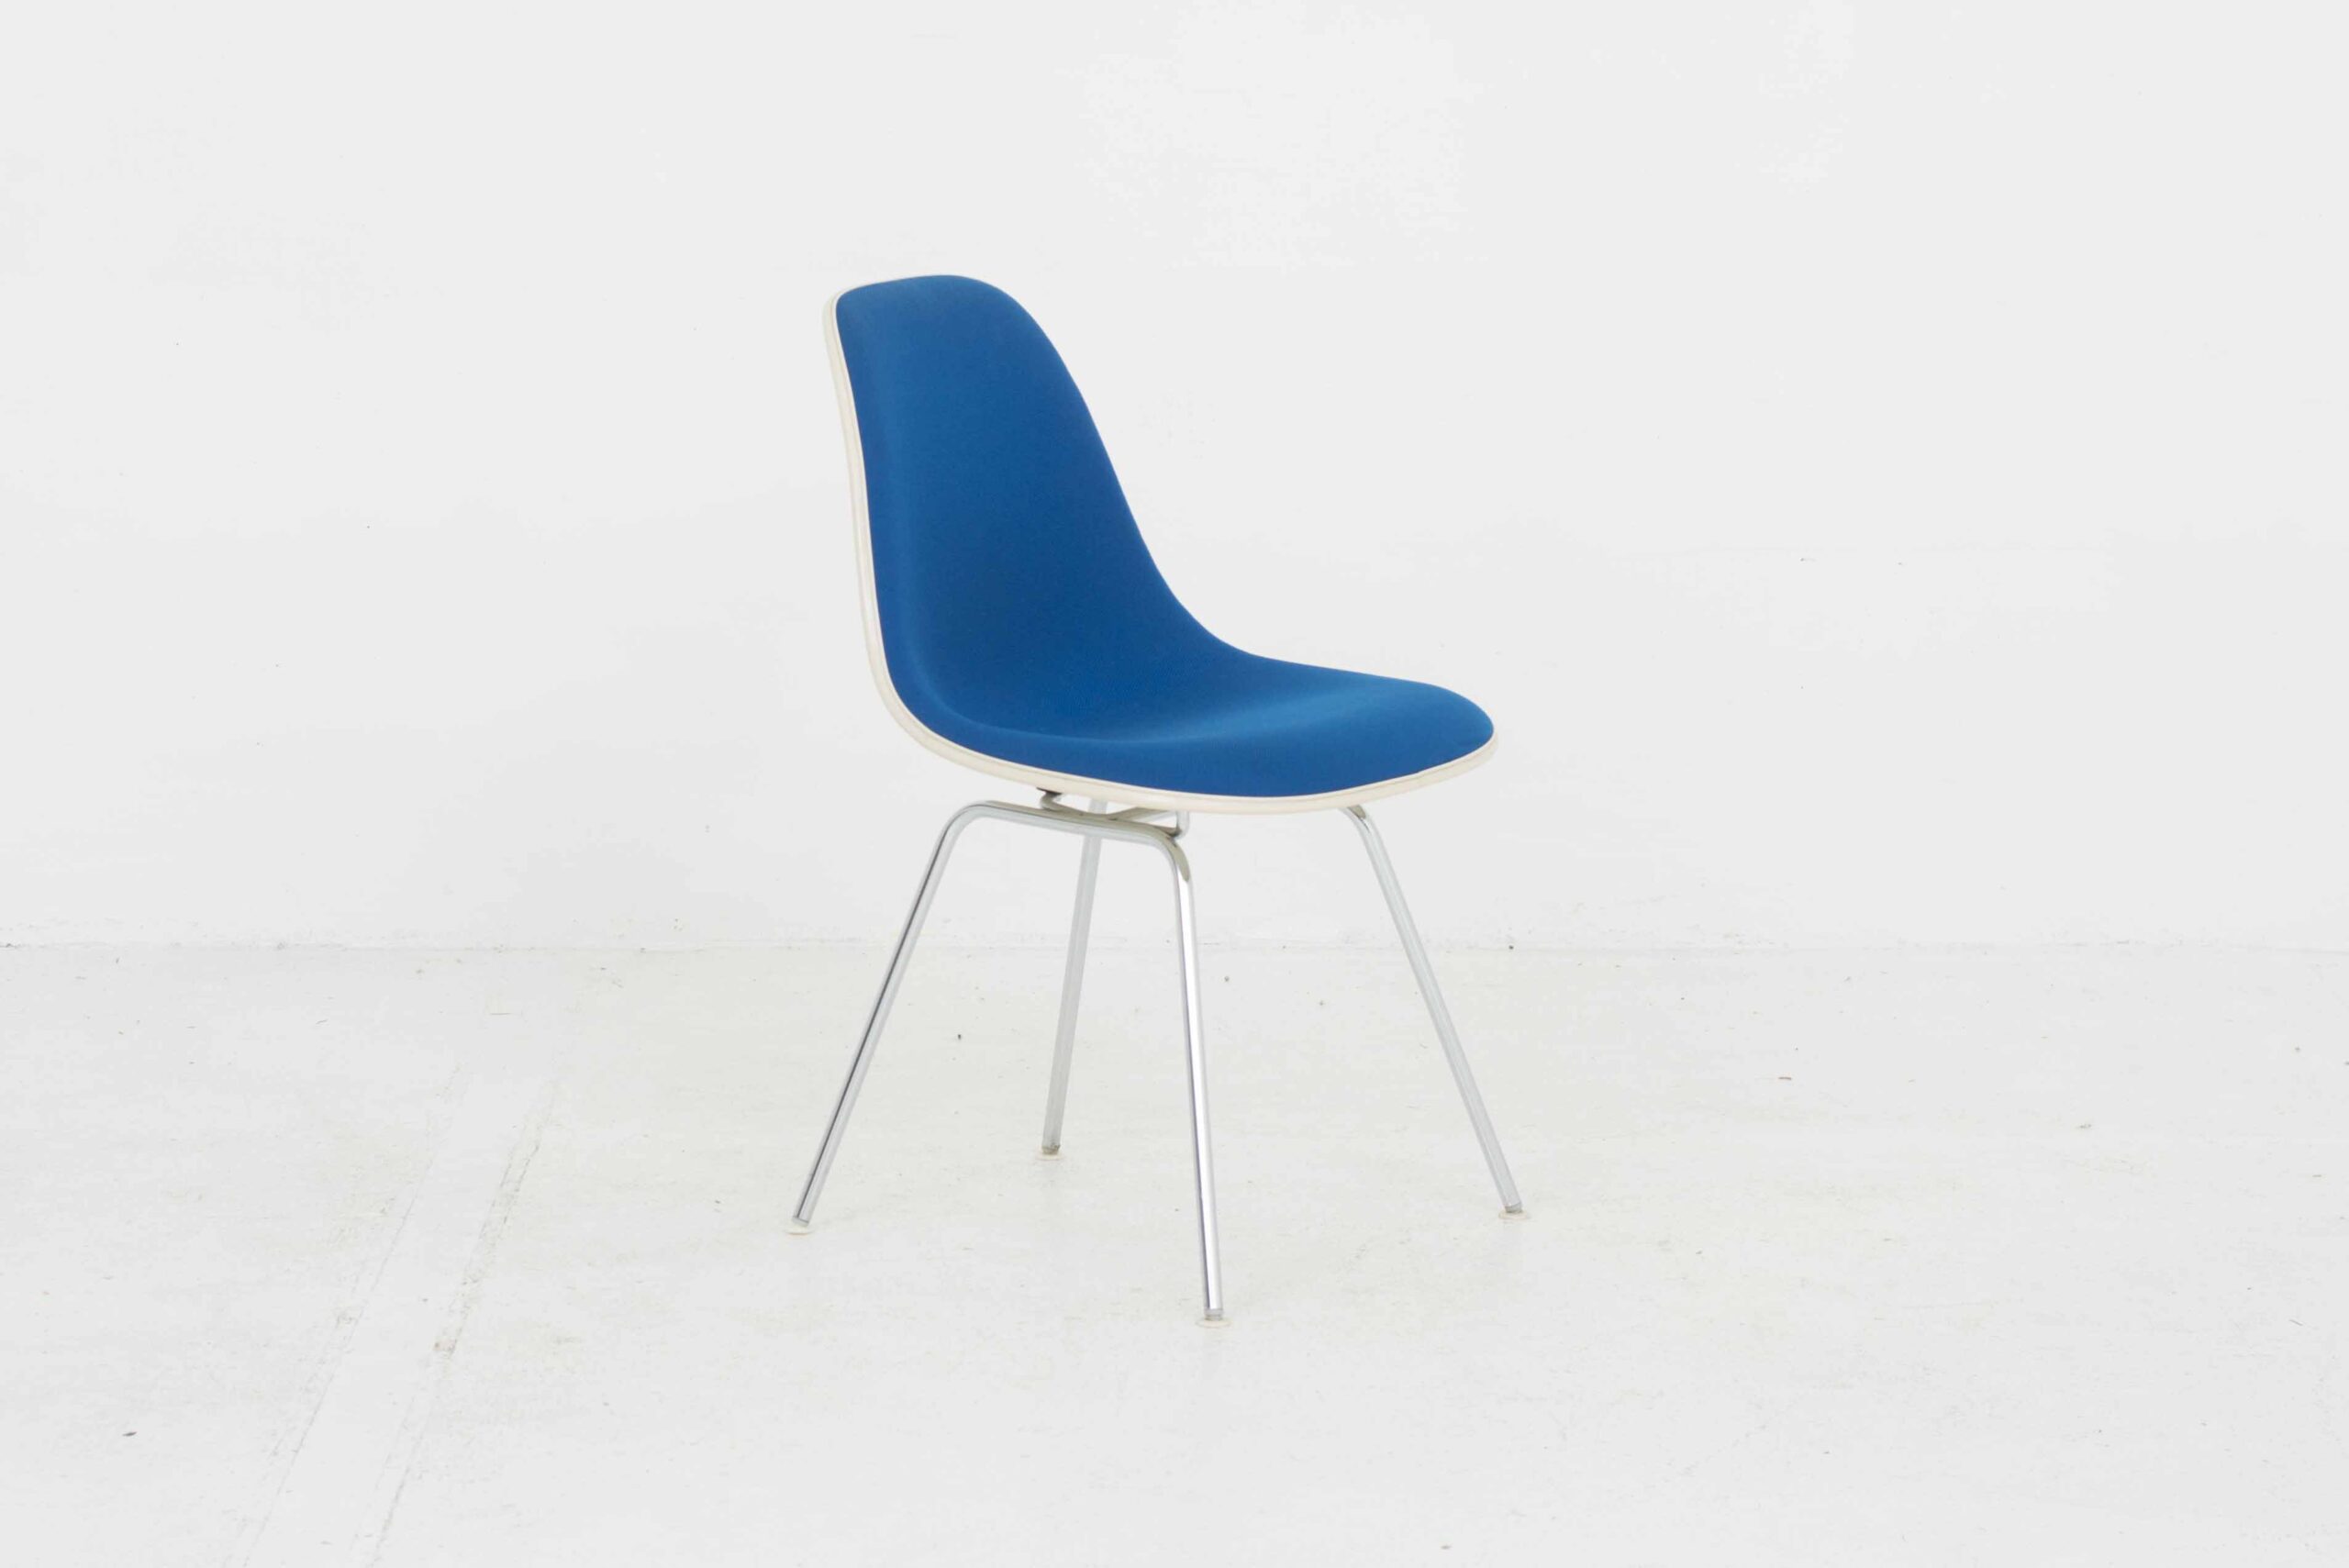 Eames Fiberglas Side Chairs von Vitra / Hermann Miller, im Viererset-2